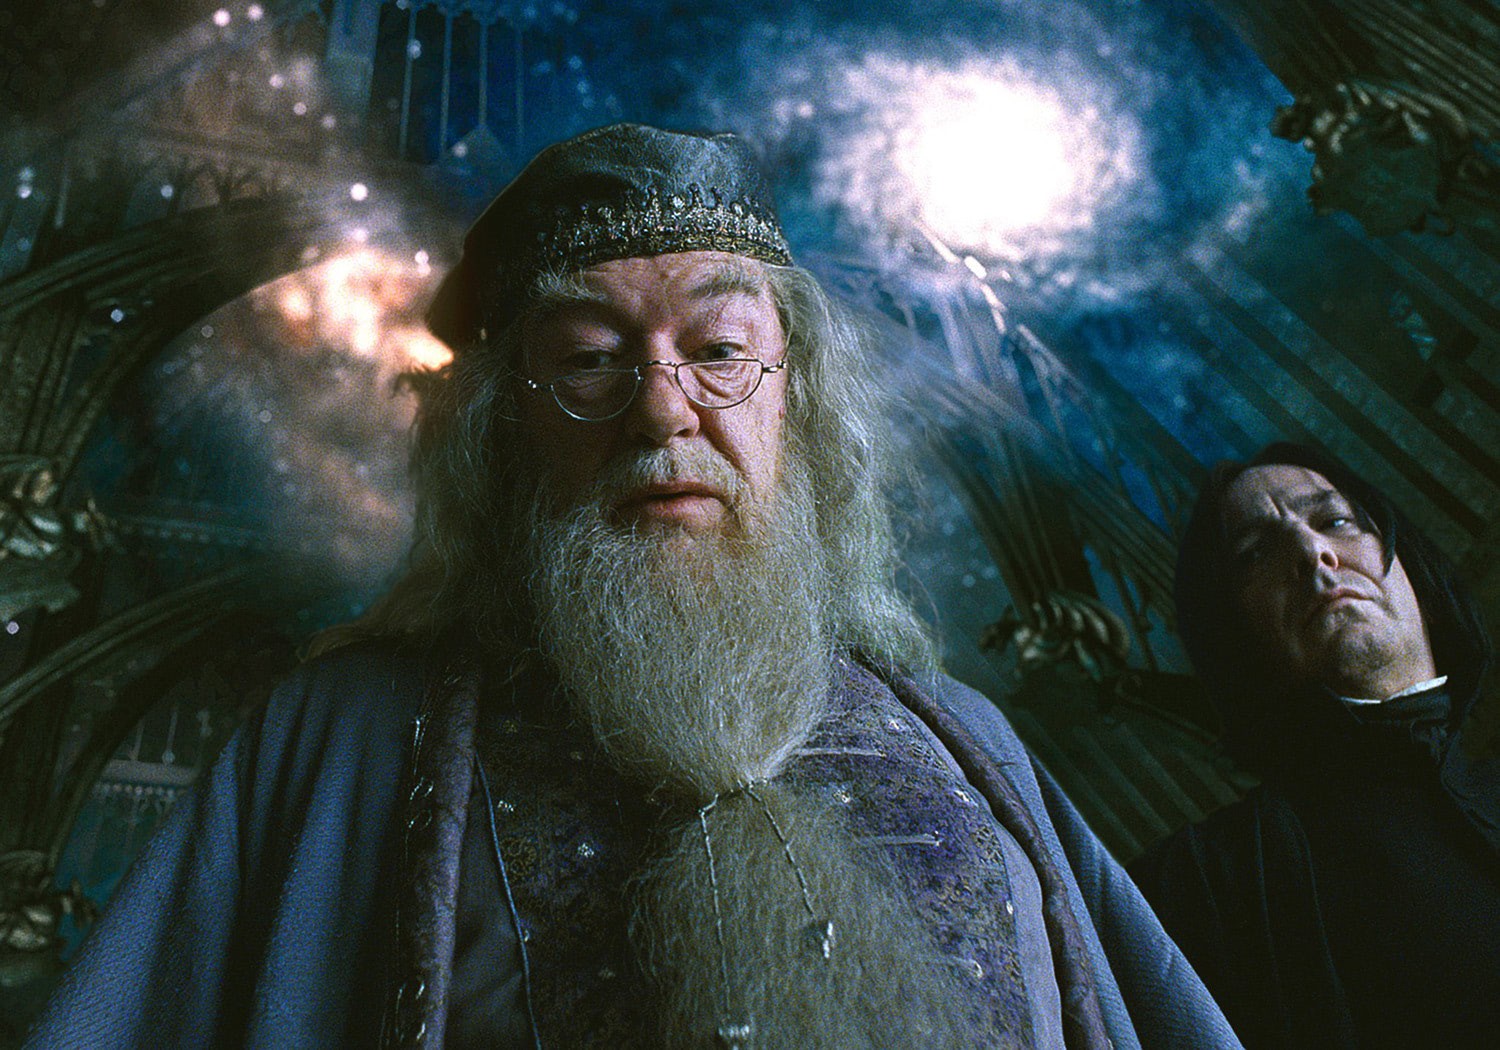 Dumbledore talks about dreams.